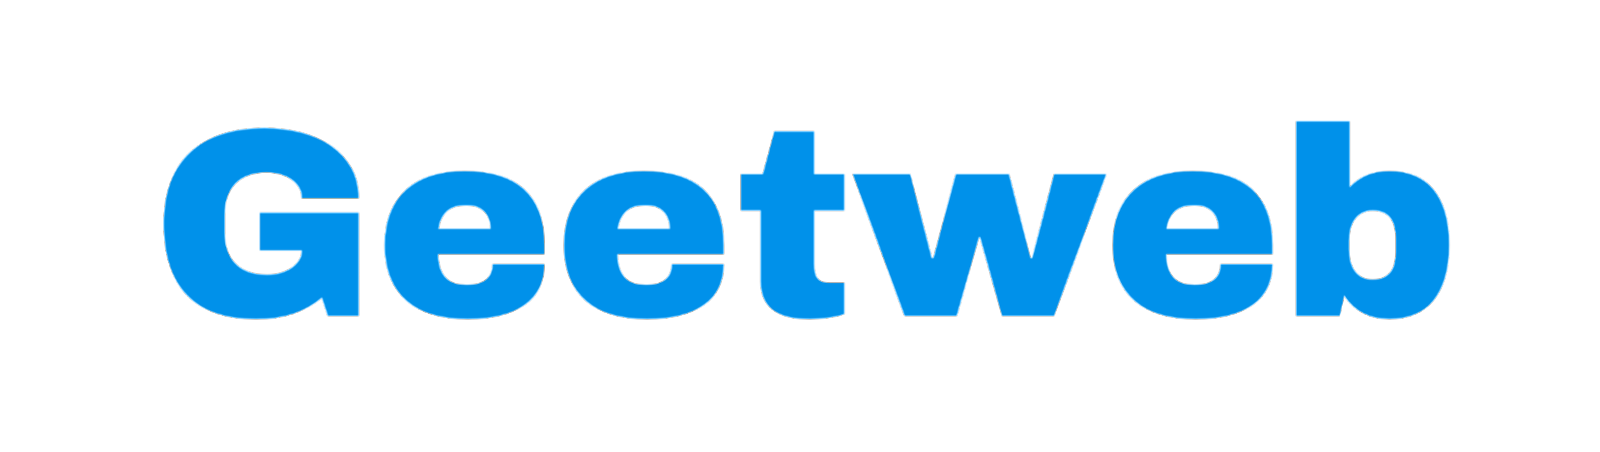 Geetweb.com